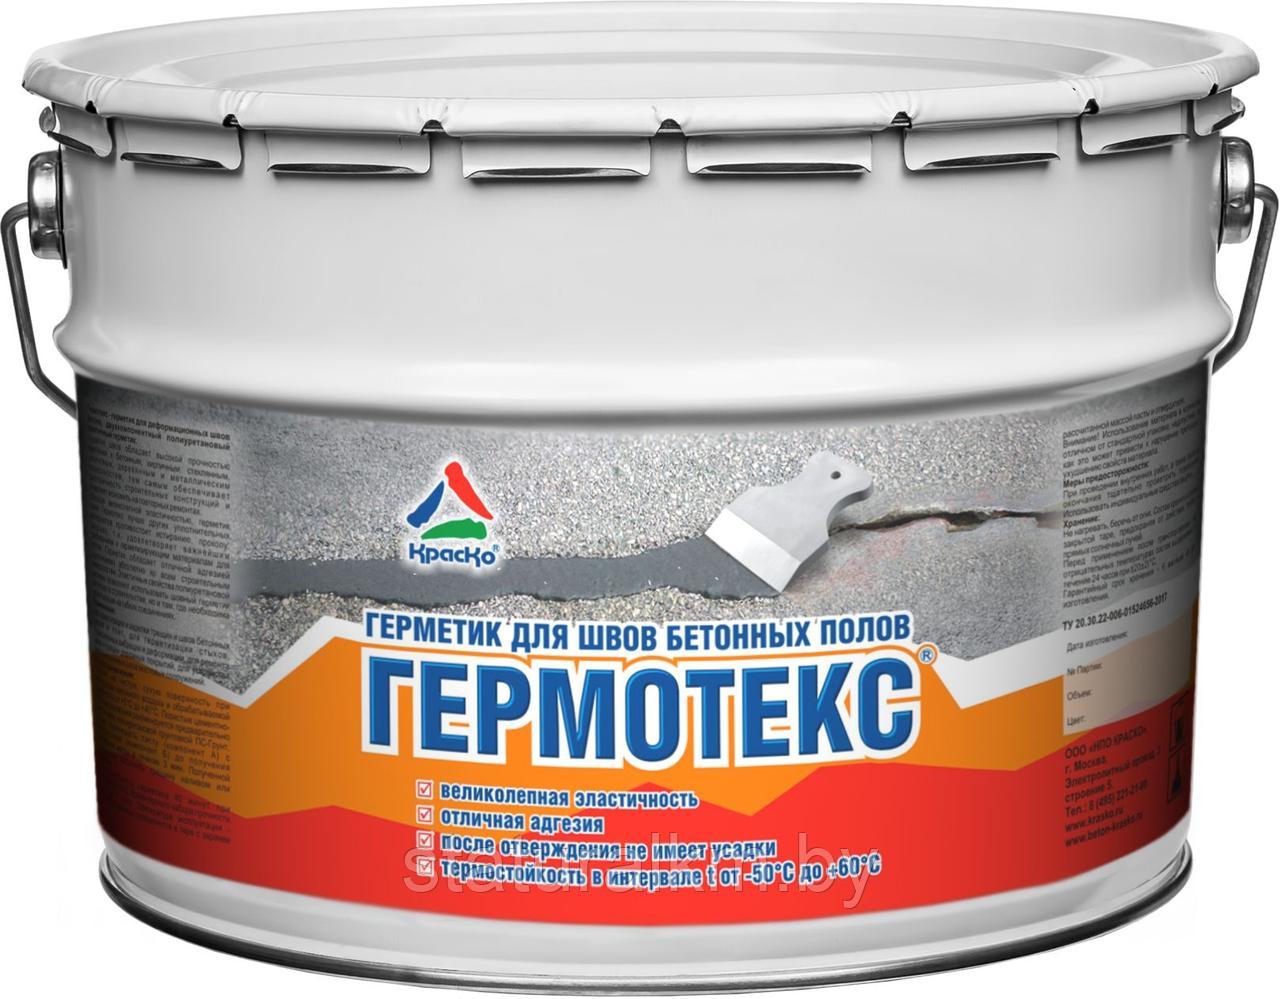 Гермотекс — герметик для швов, двухкомпонентный полиуретановый герметик для швов бетонных полов.